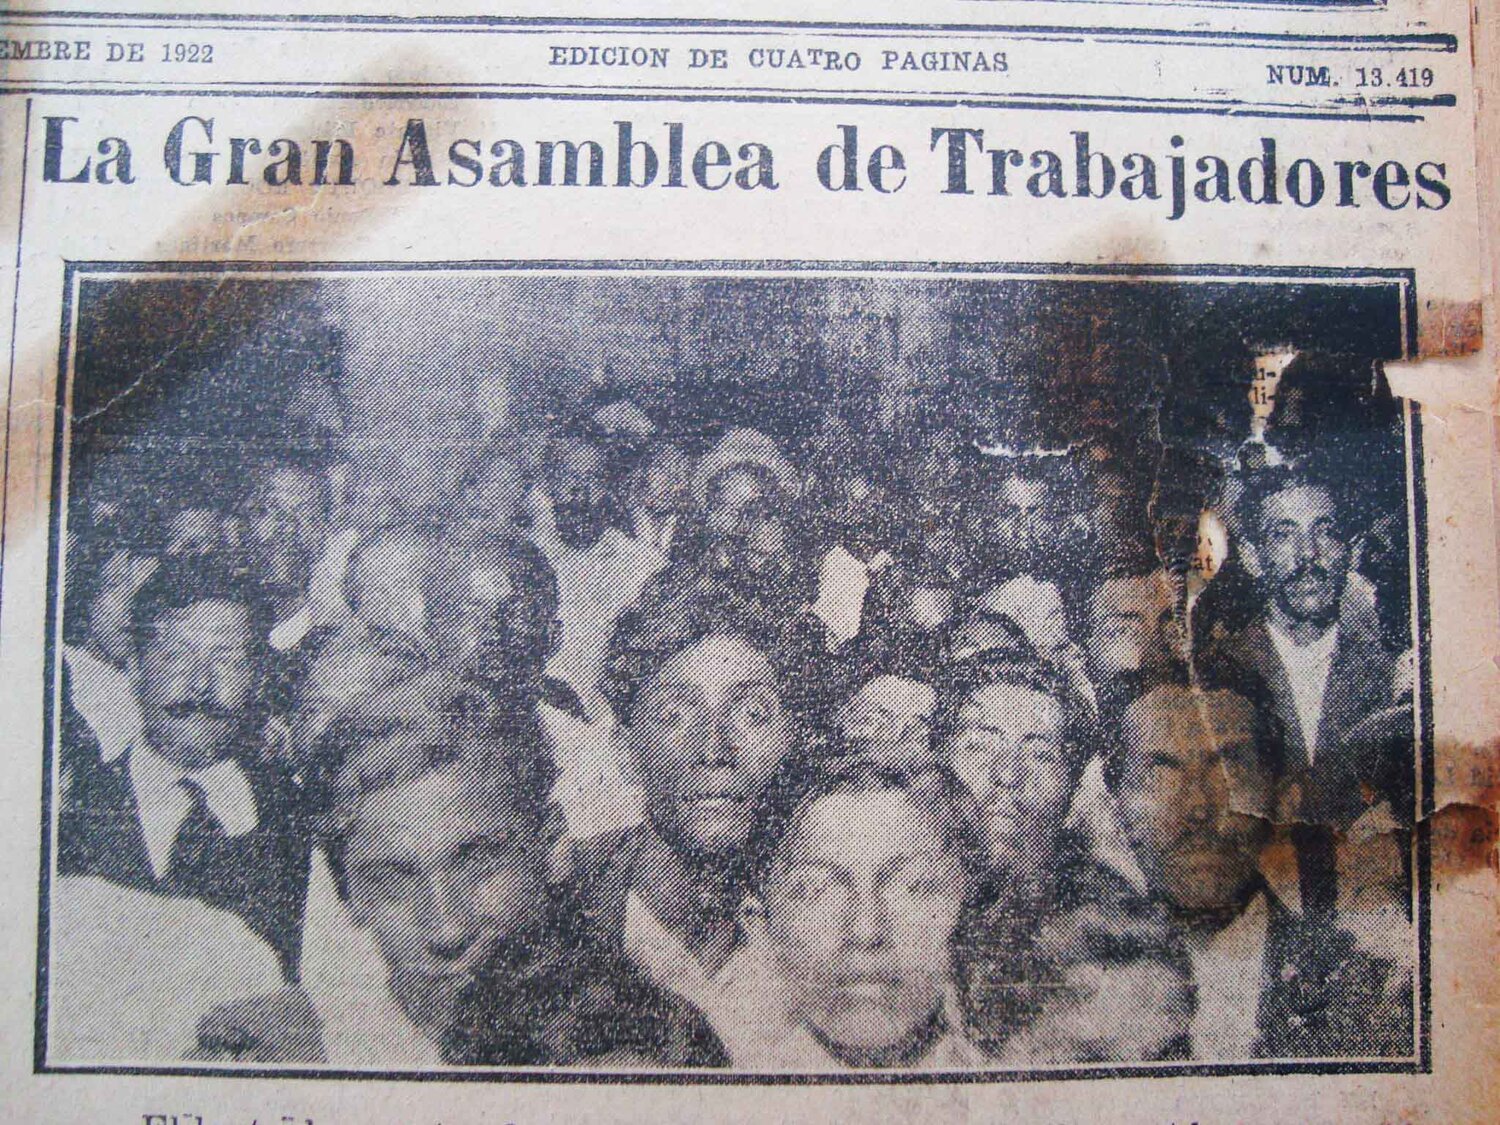 Obreros reunidos en la Gran Asamblea de Trabajadores, un día antes de la masacre del 15 de noviembre de 1922. El Telégrafo. Guayaquil, 14 de noviembre de 1922.